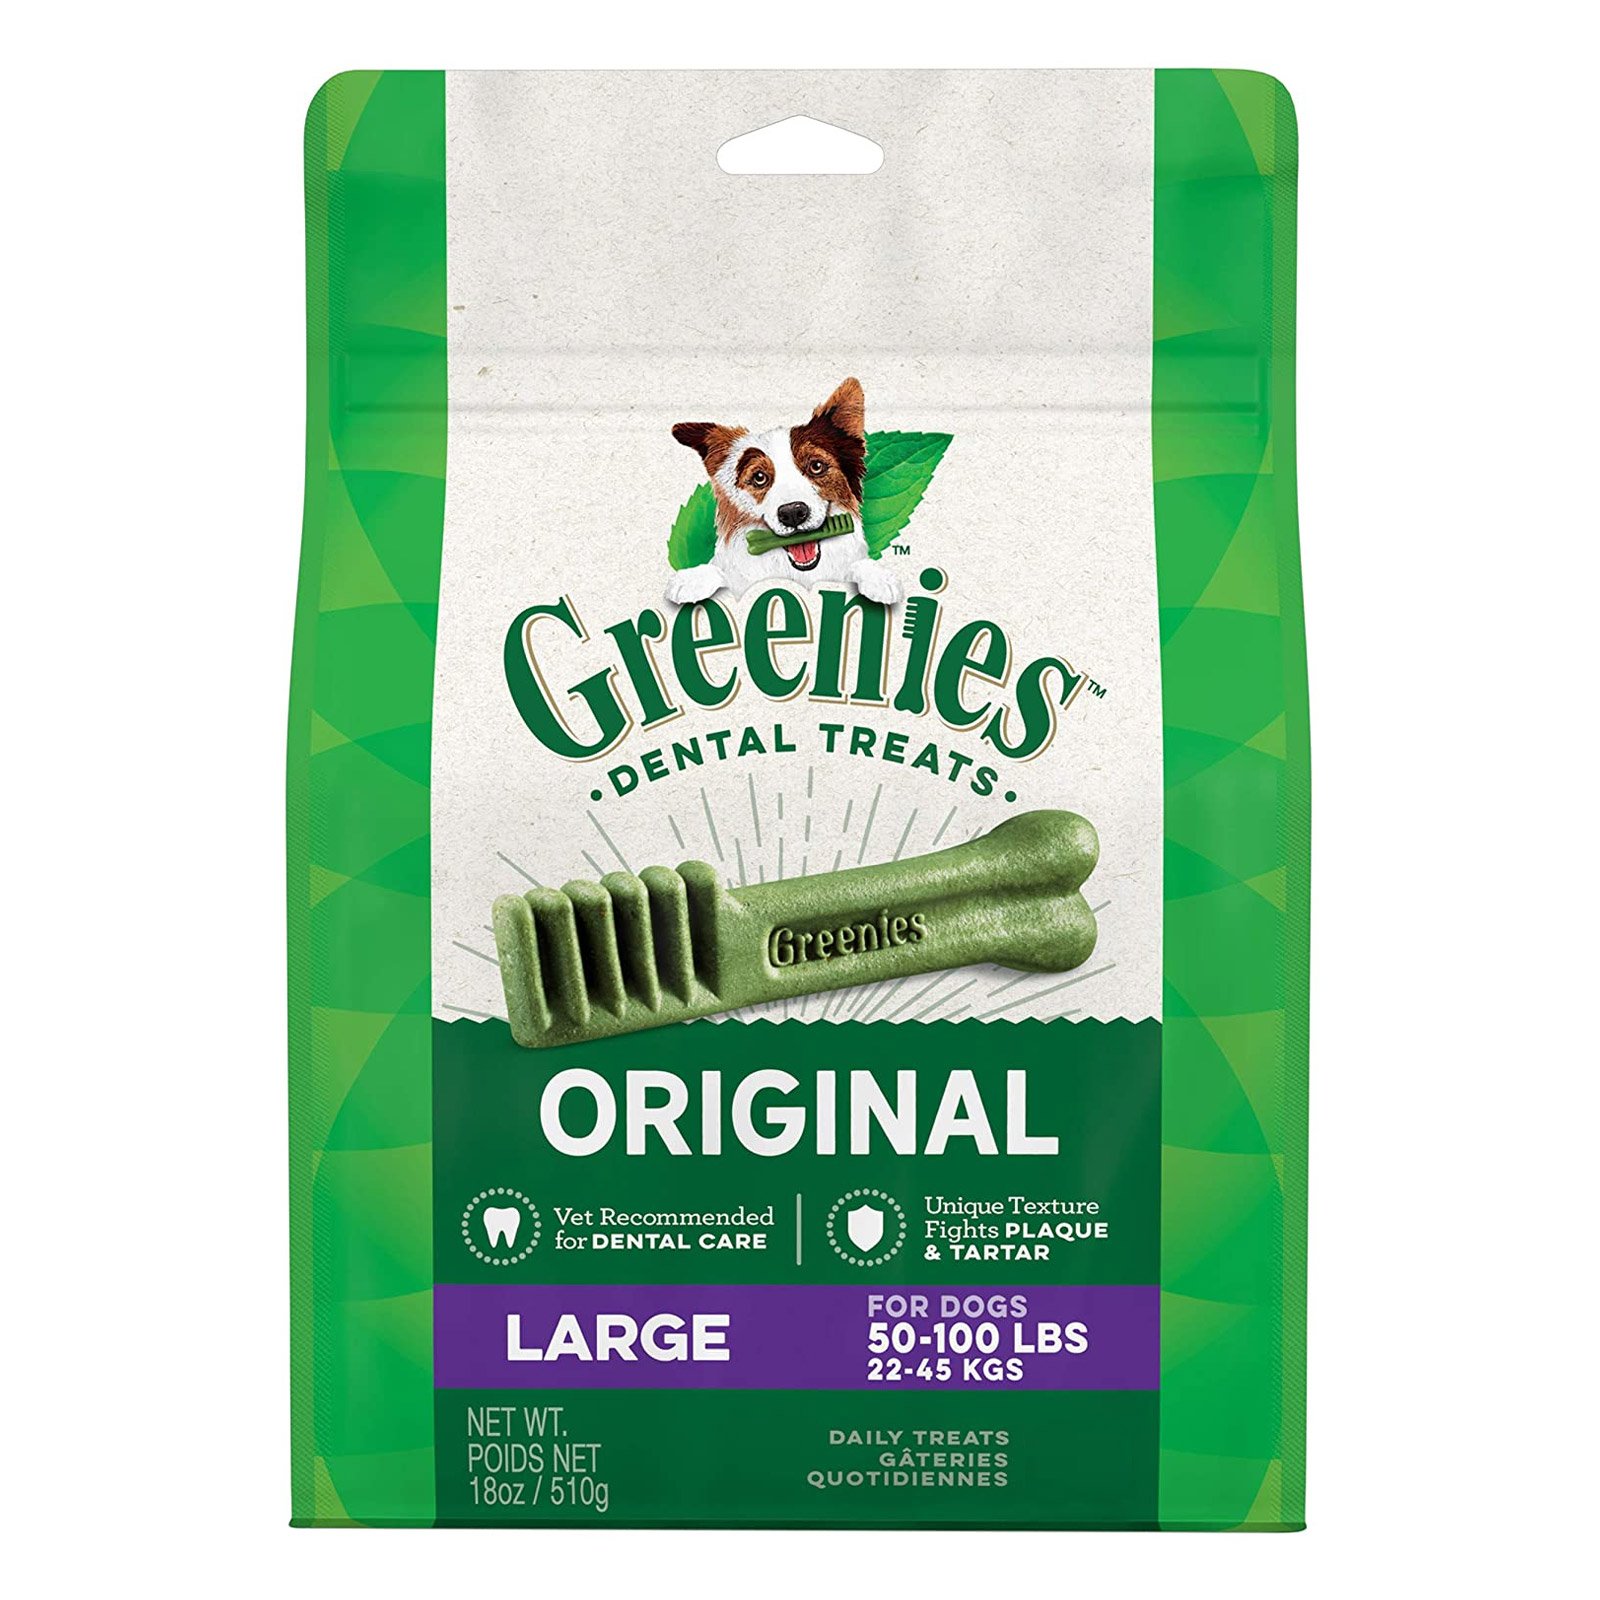 Greenies Original Dental Treats Large For Dogs 22-45 Kg  340 Gms